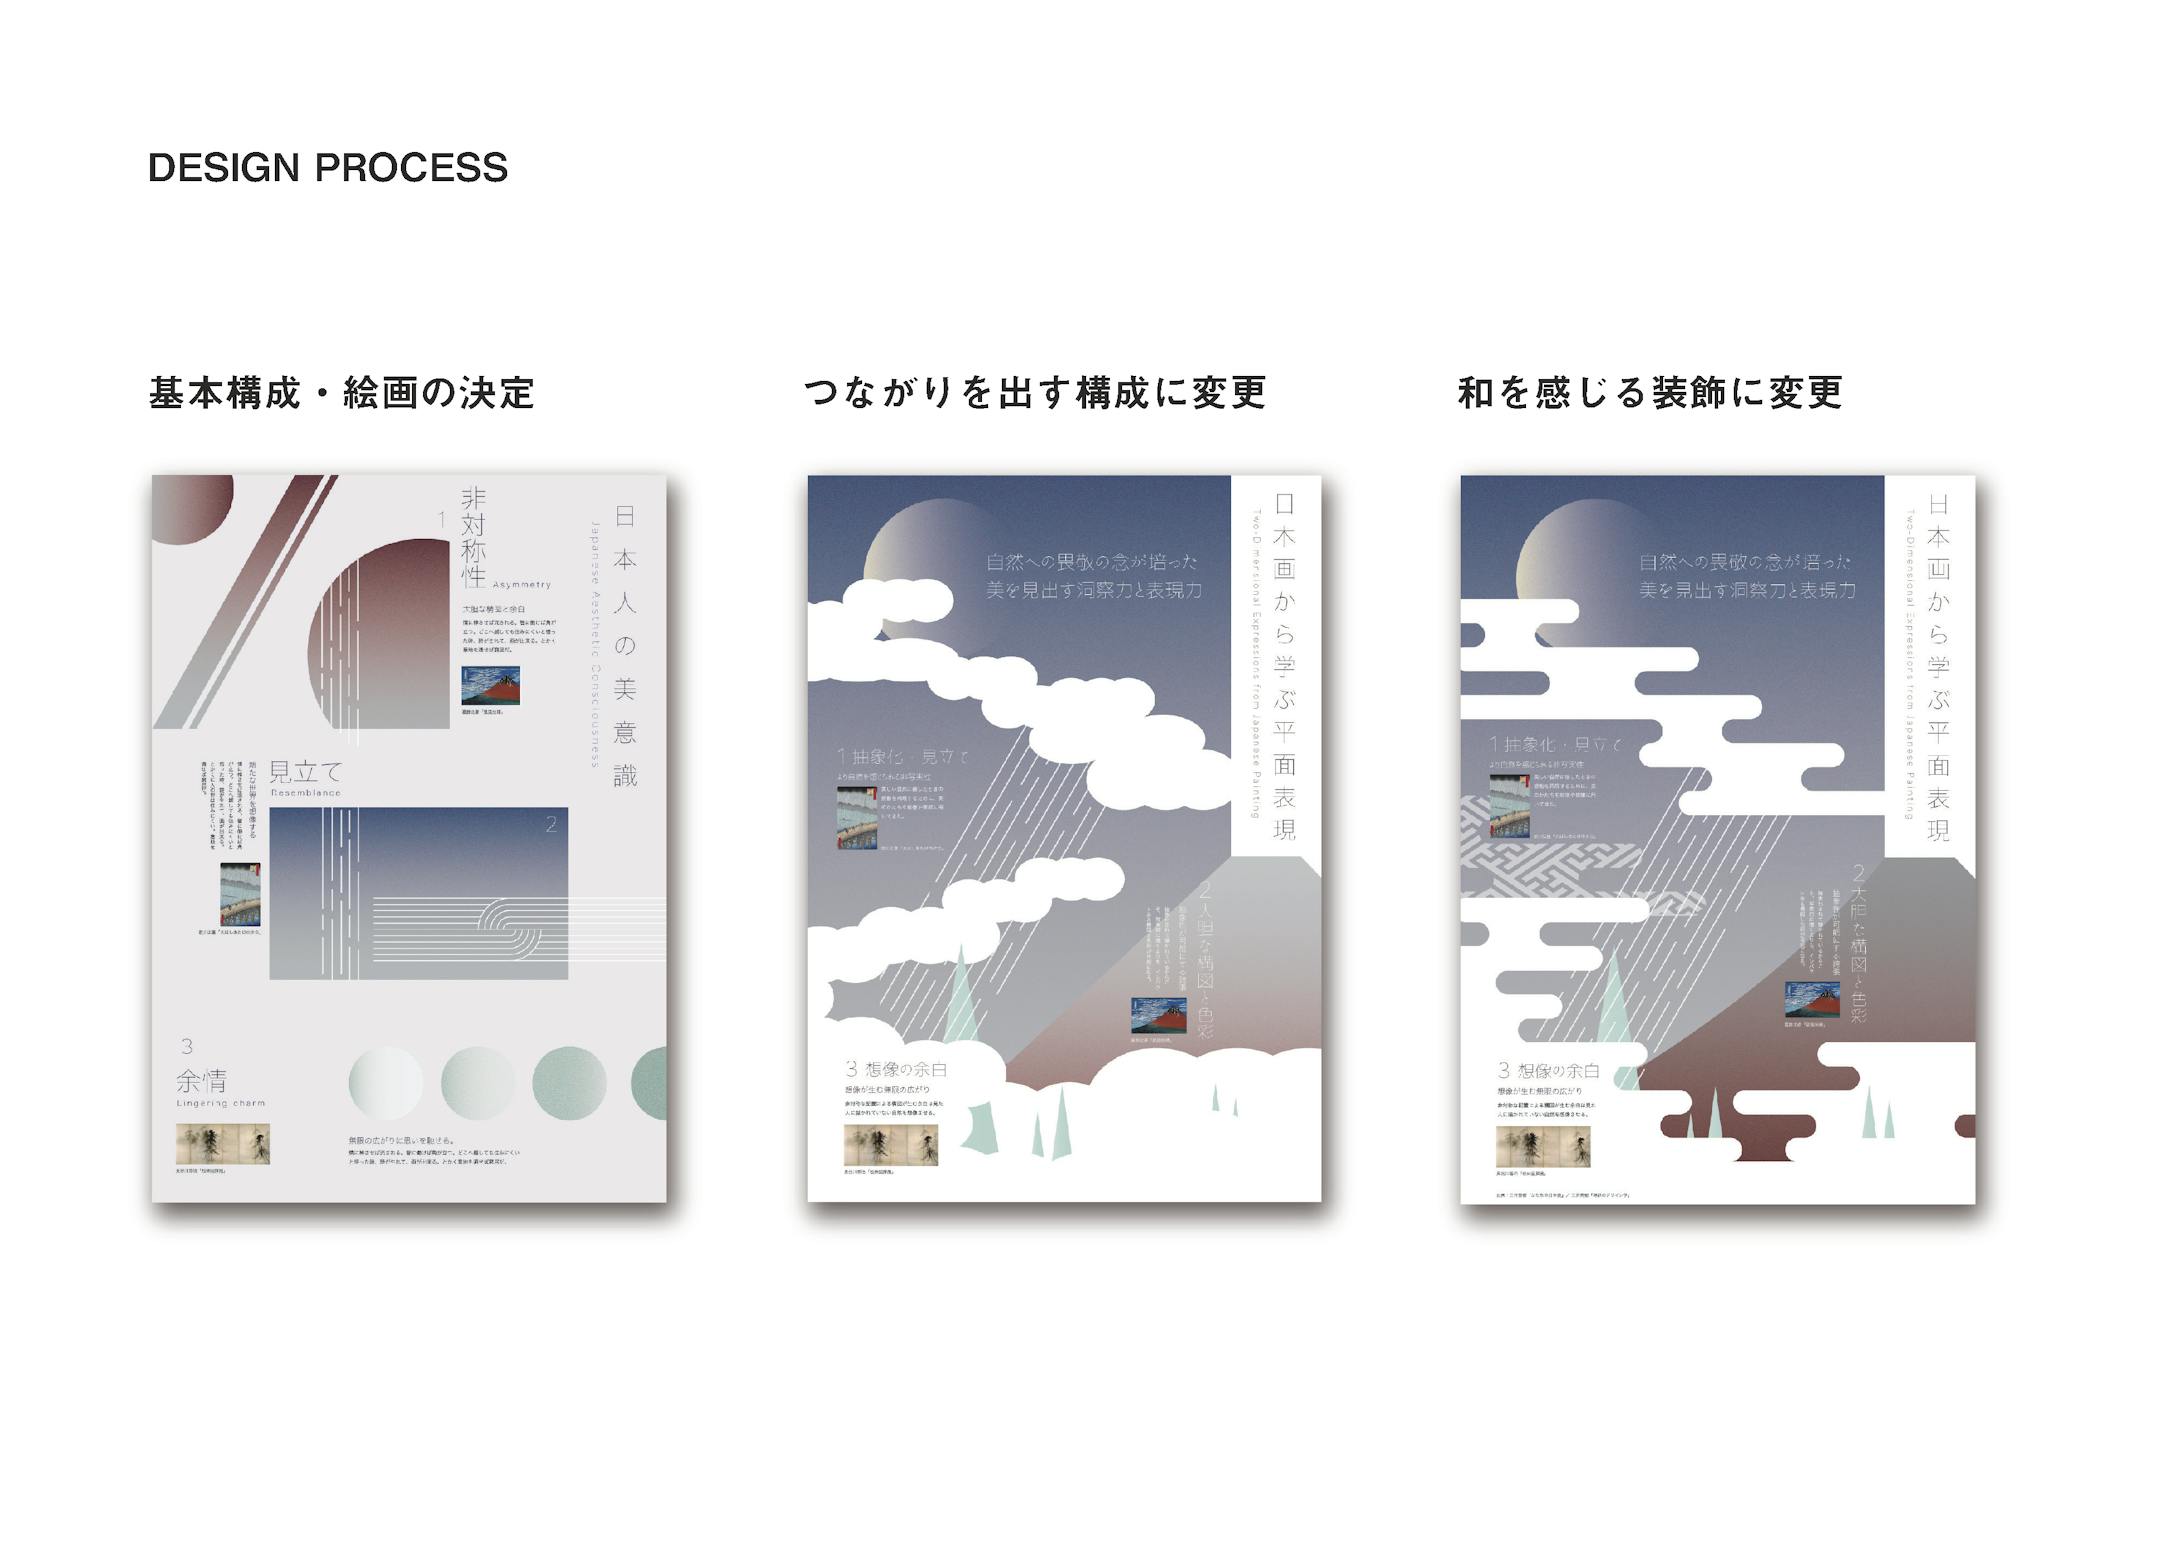 インフォグラフィック『日本画から学ぶ平面表現』-4